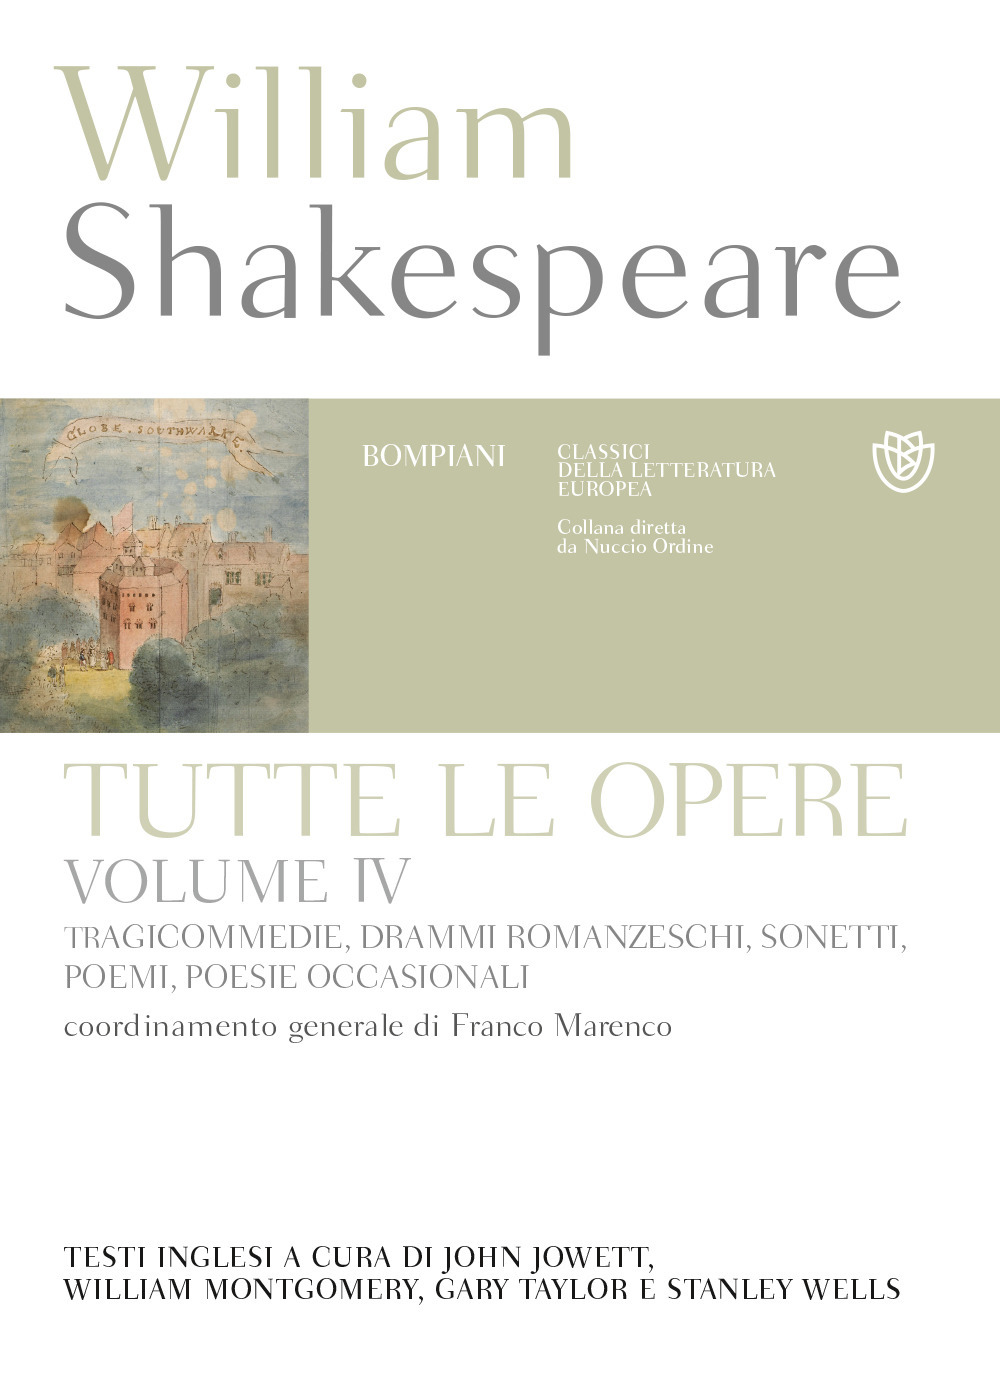 Libri William Shakespeare - Tutte Le Opere. Testo Inglese A Fronte Vol 04 NUOVO SIGILLATO, EDIZIONE DEL 23/01/2019 SUBITO DISPONIBILE